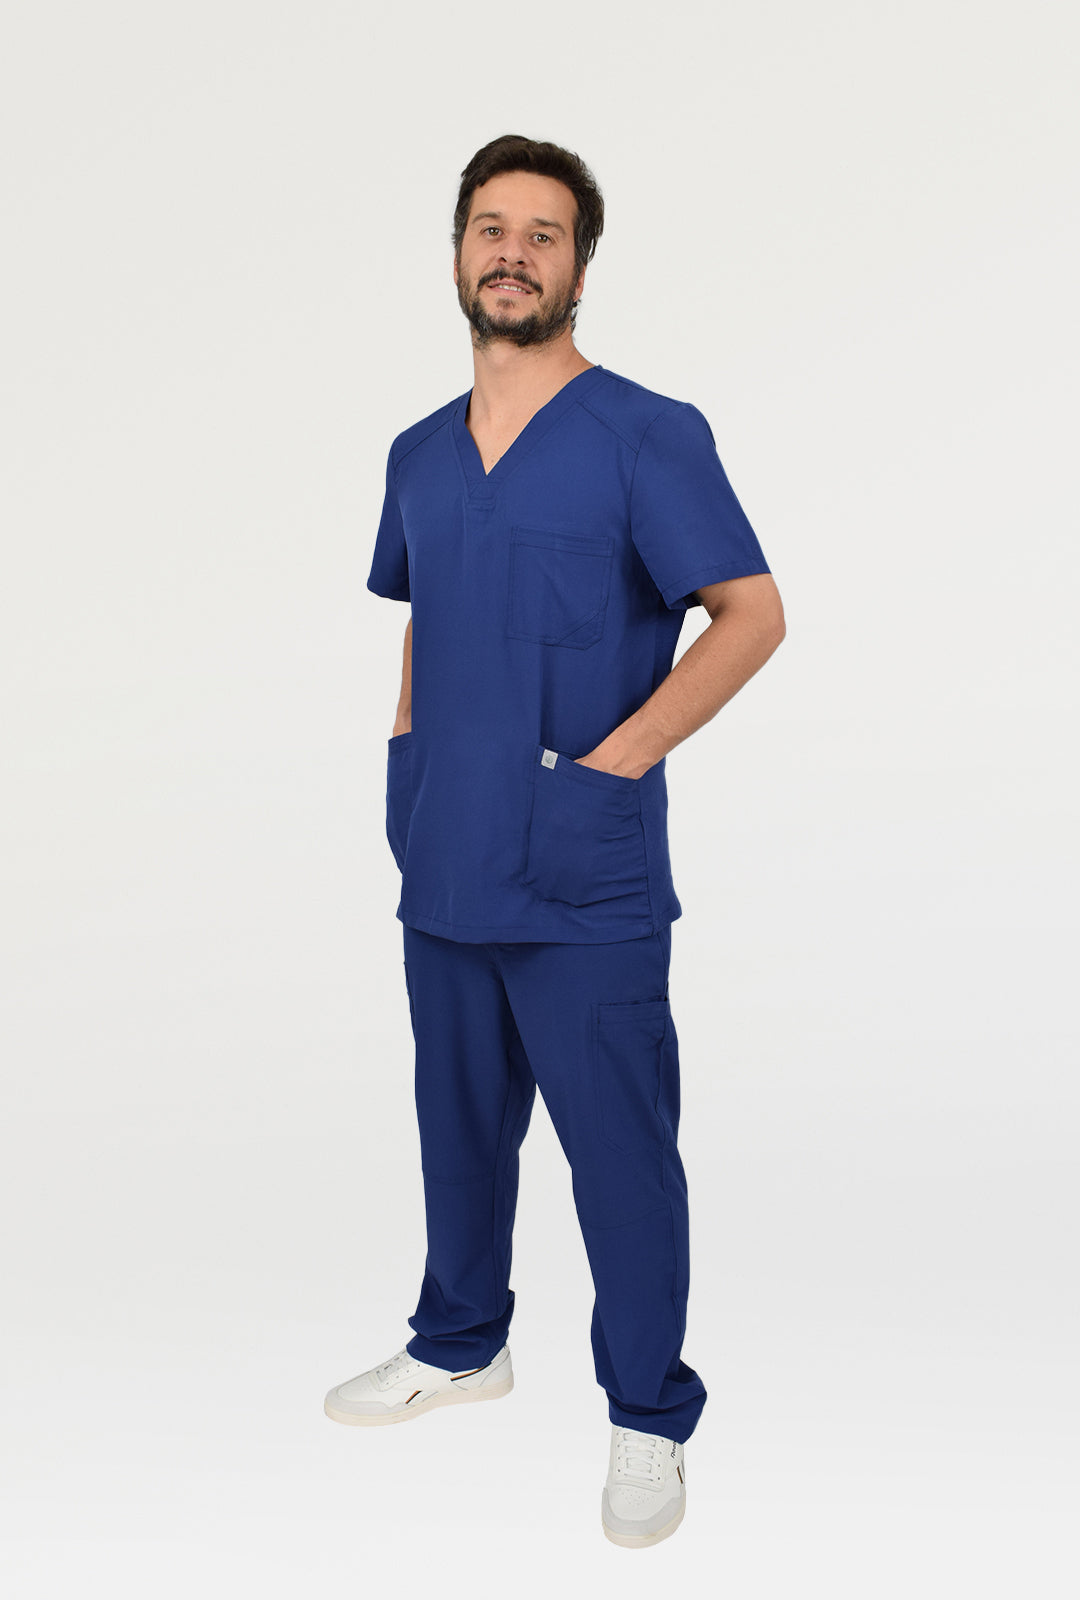 traje clinico azul hombre